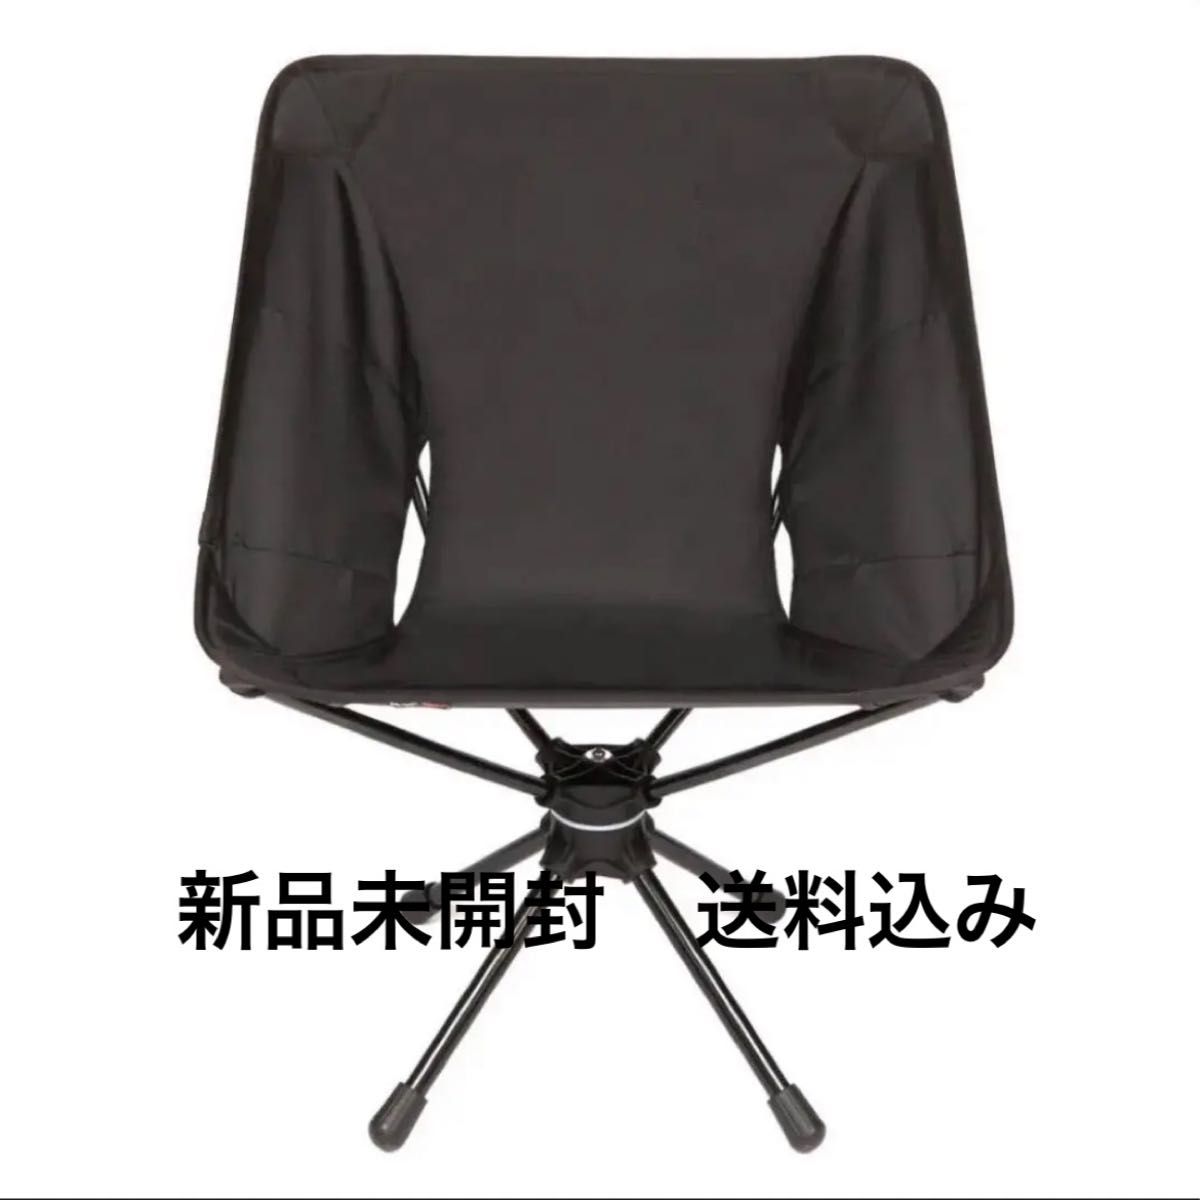 Helinox tactical swivel chair ブラックヘリノックス タクティカル